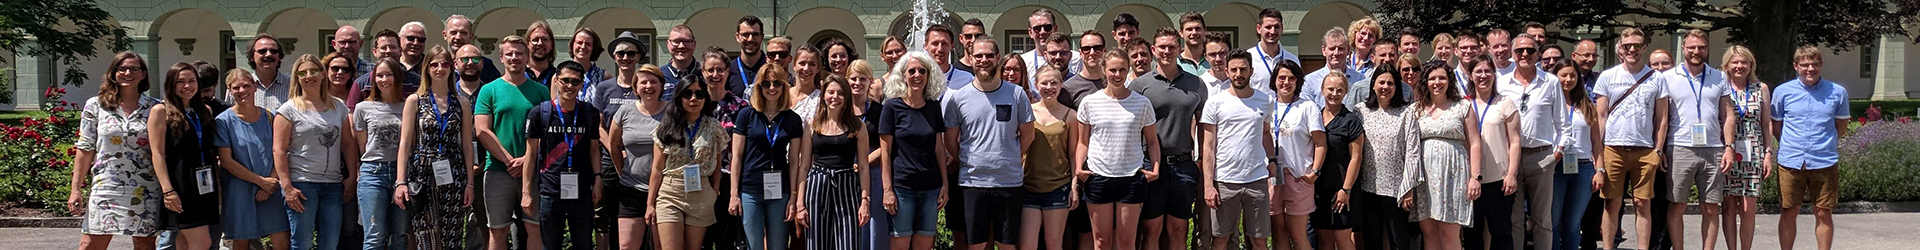 Gruppenfoto eines Alumni-Treffens der Hochschule Aalen